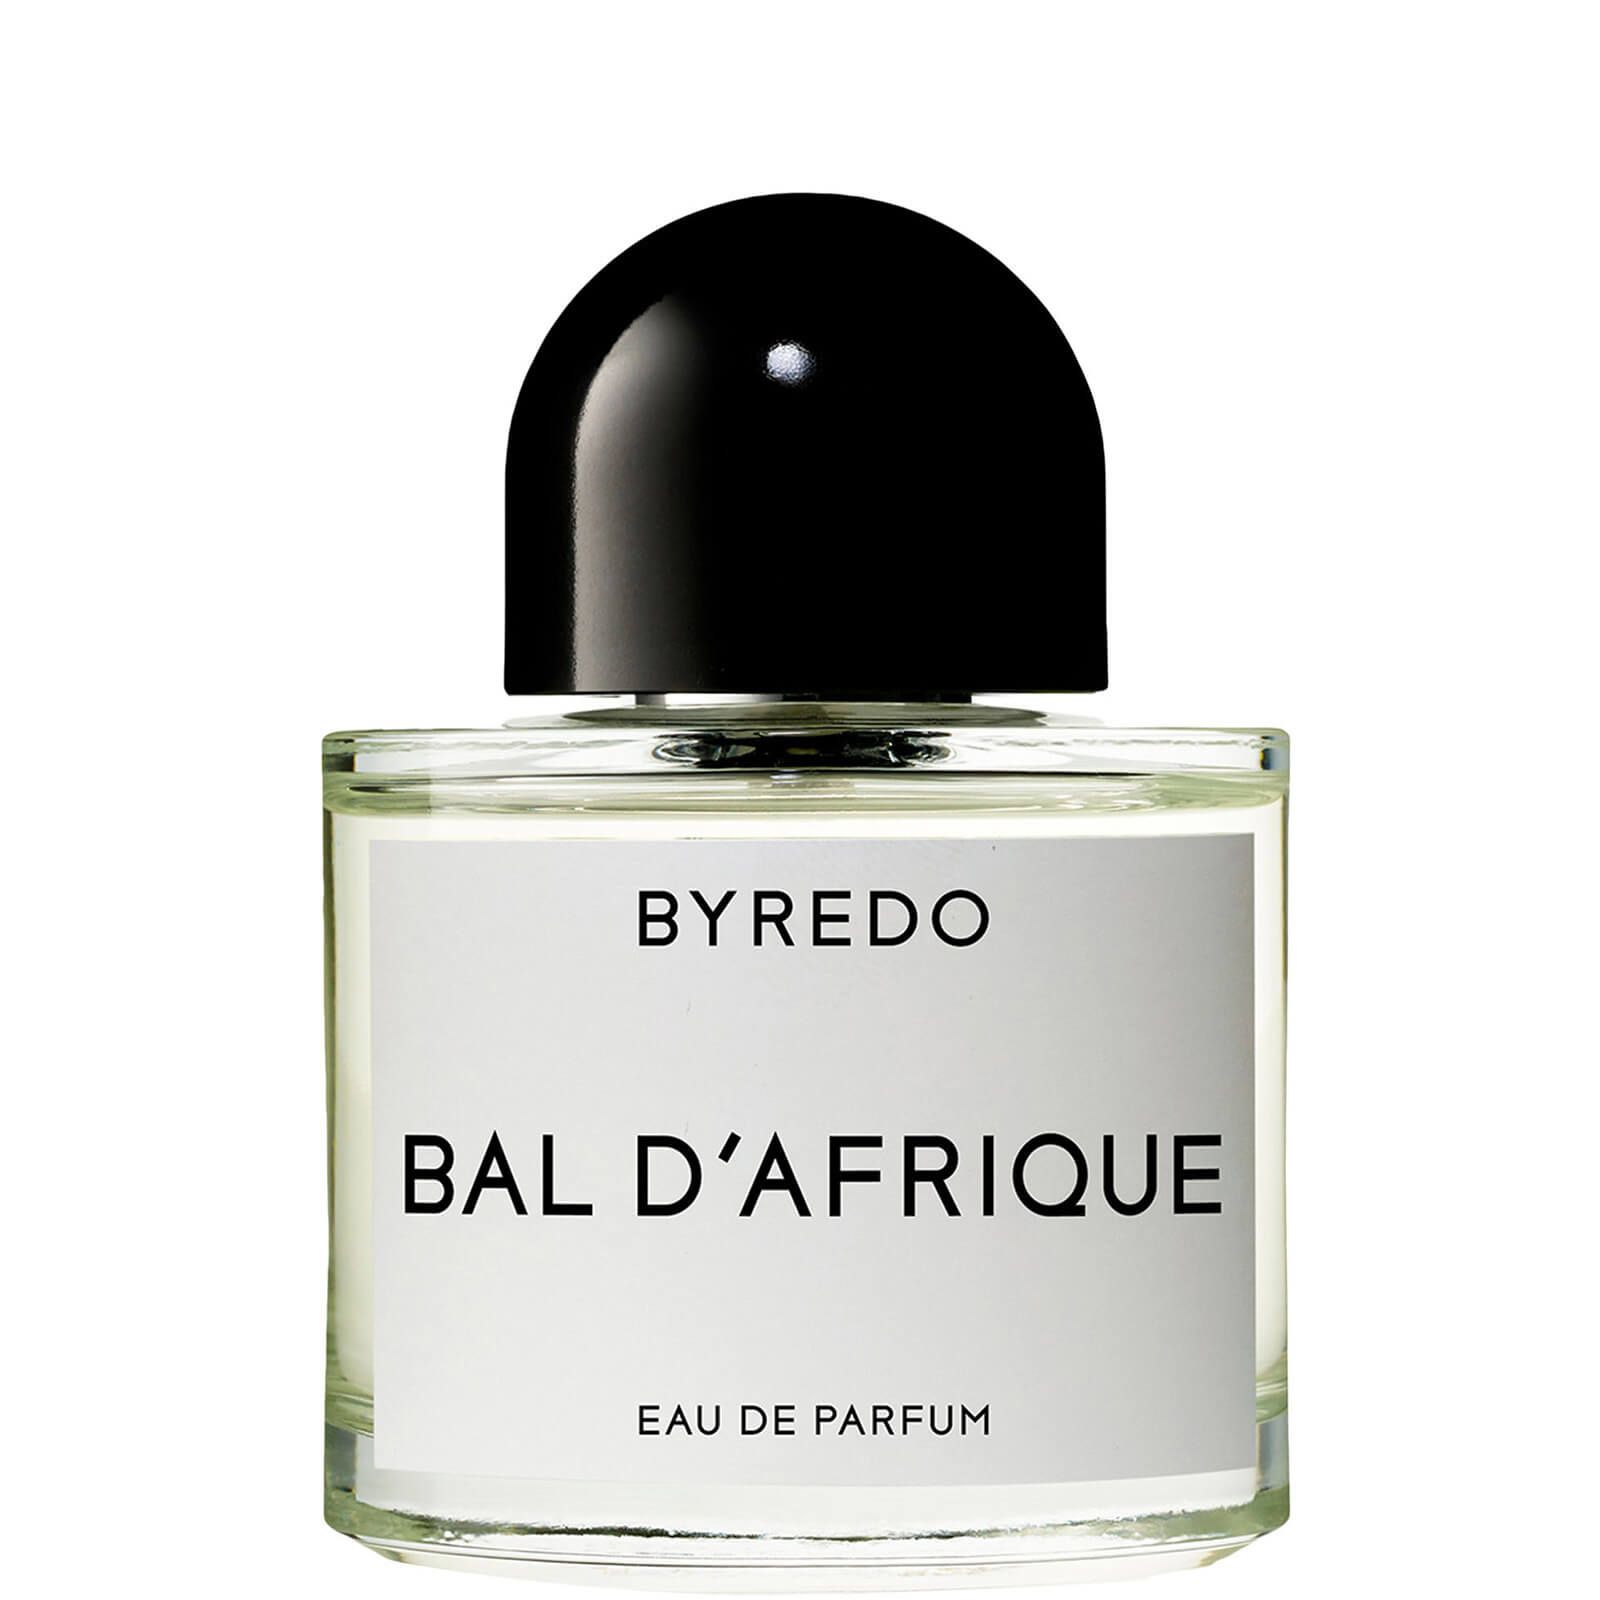 BYREDO Bal d'Afrique Eau de Parfum | Cult Beauty (Global)